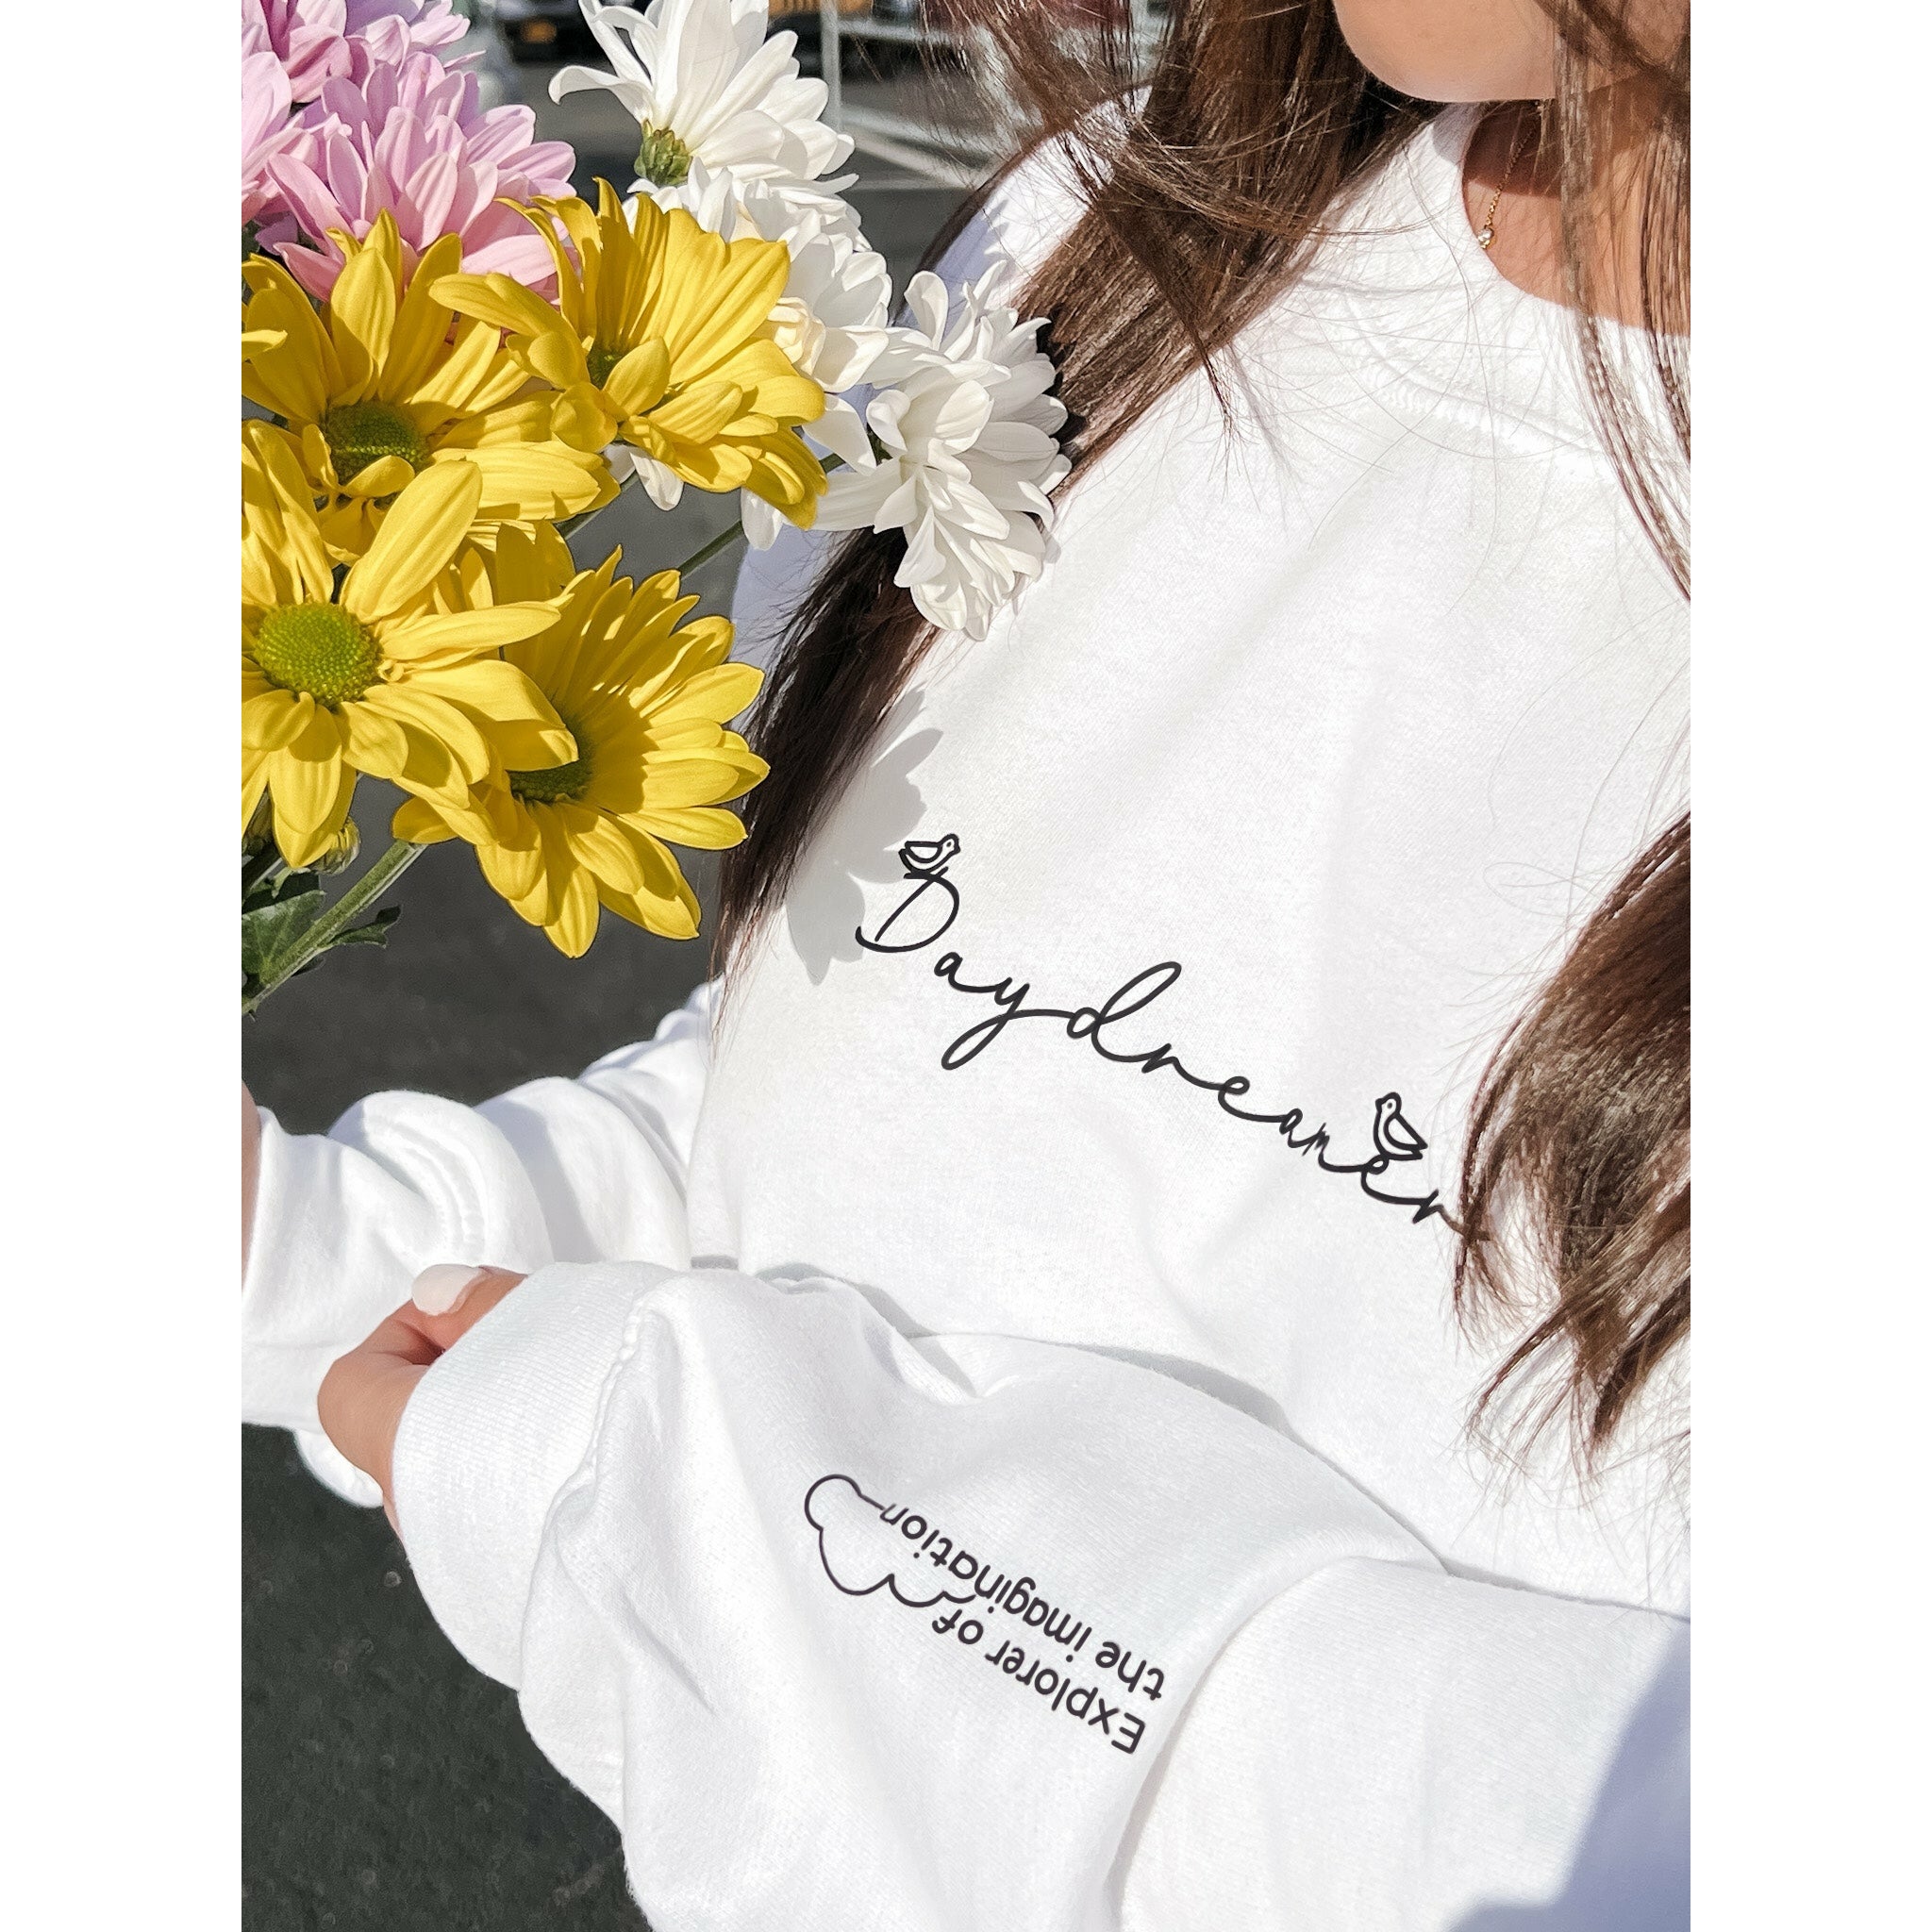 Daydreamer Crewneck Sweatshirt In White